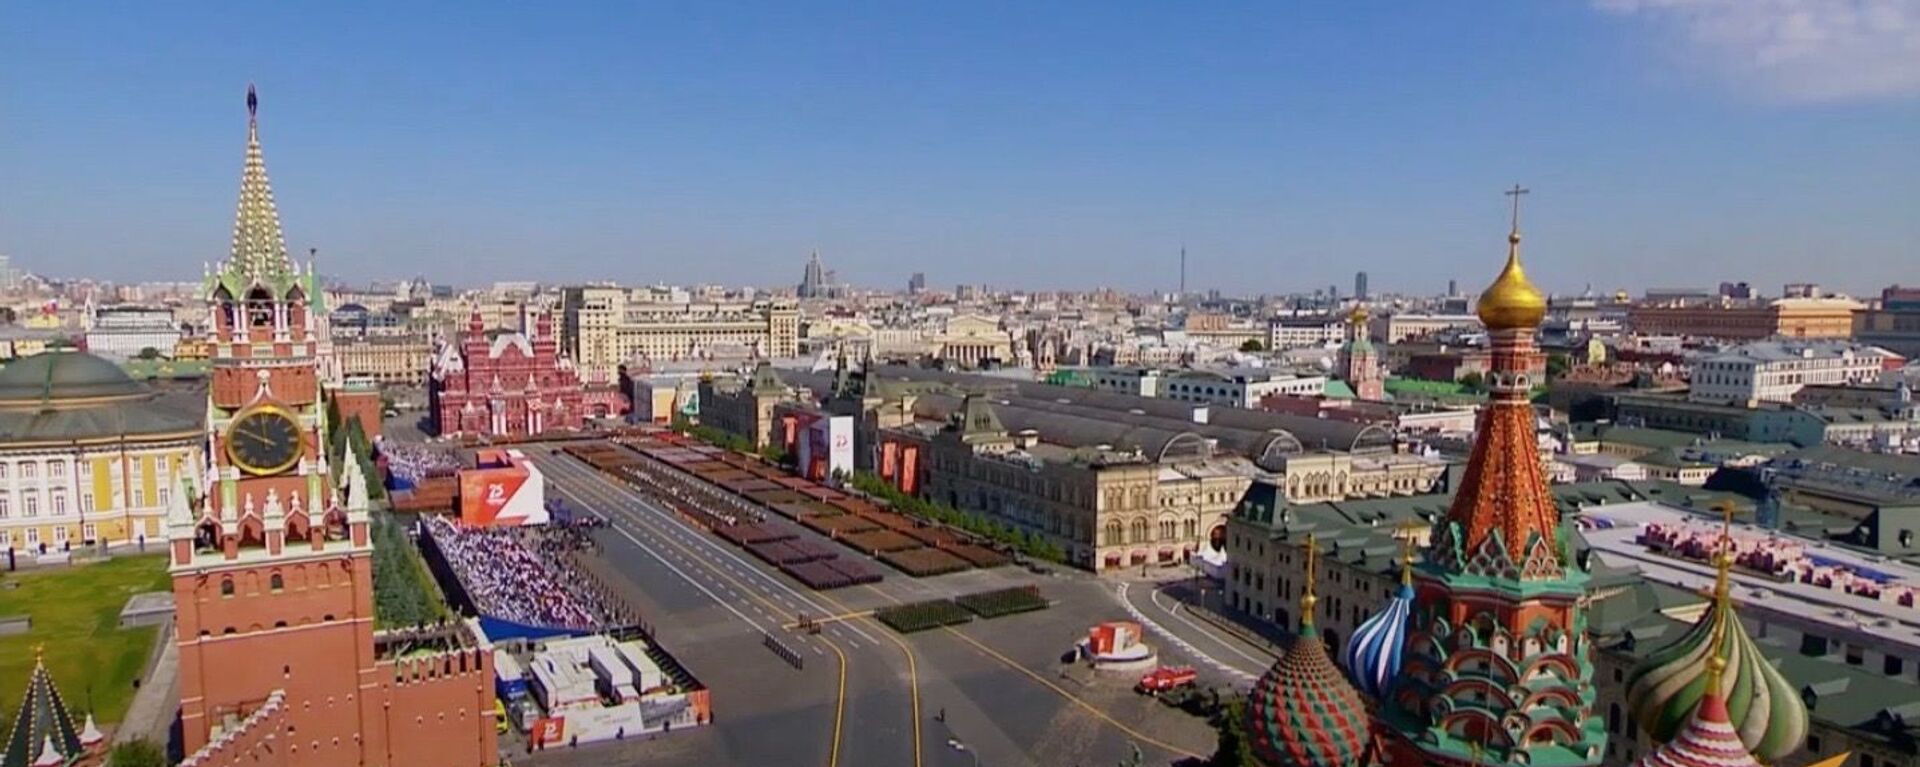 Как прошел парад Победы в Москве - Sputnik Узбекистан, 1920, 24.06.2020